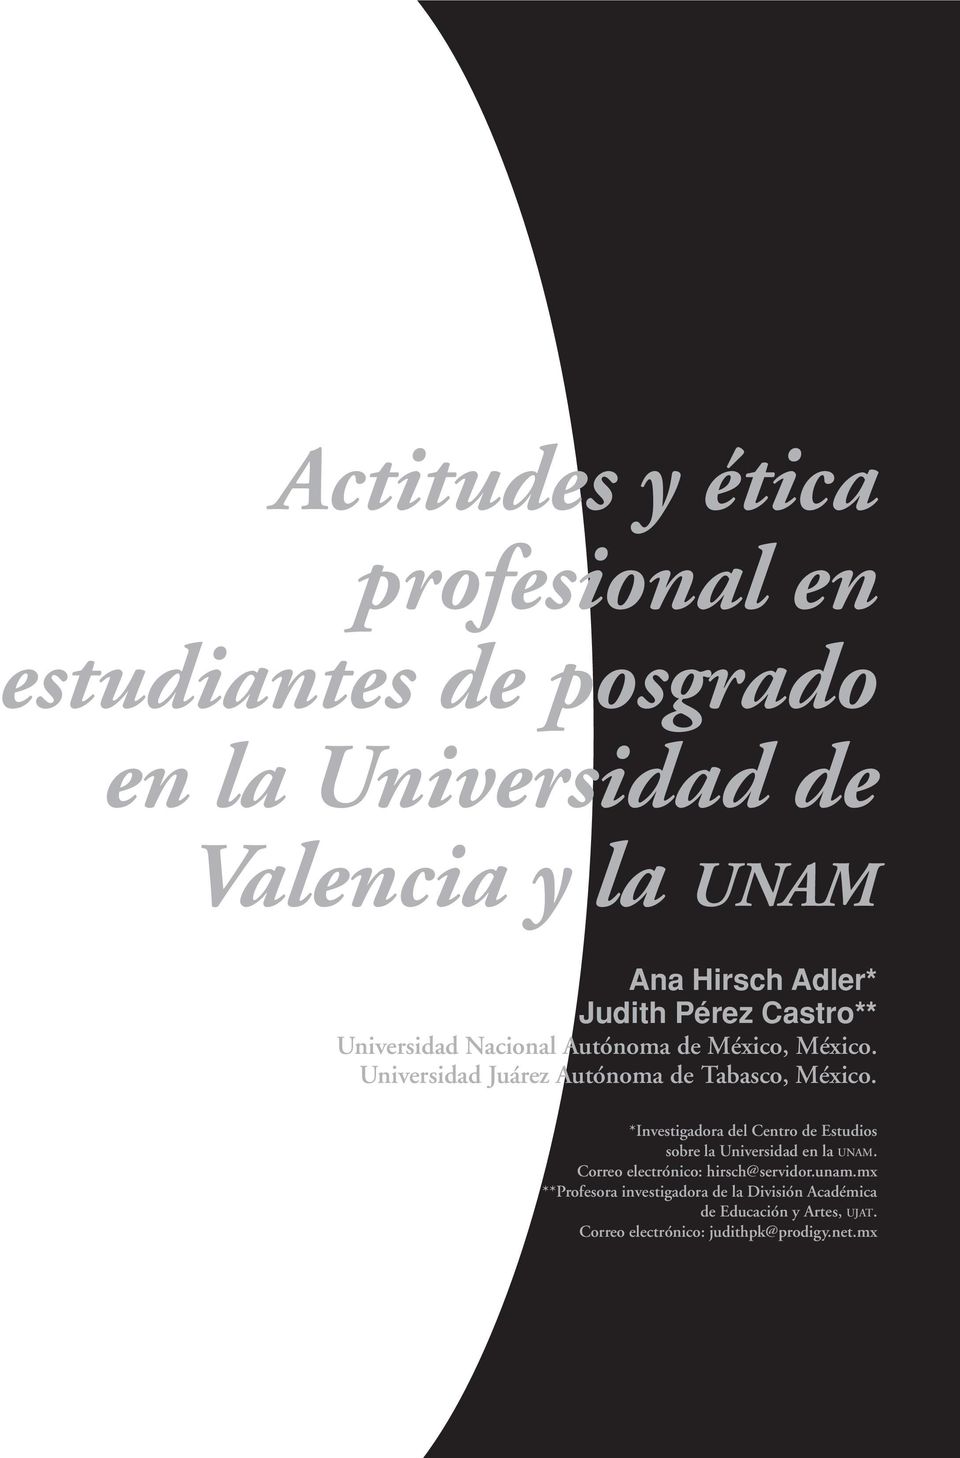 *Investigadora del Centro de Estudios sobre la Universidad en la UNAM. Correo electrónico: hirsch@servidor.unam.